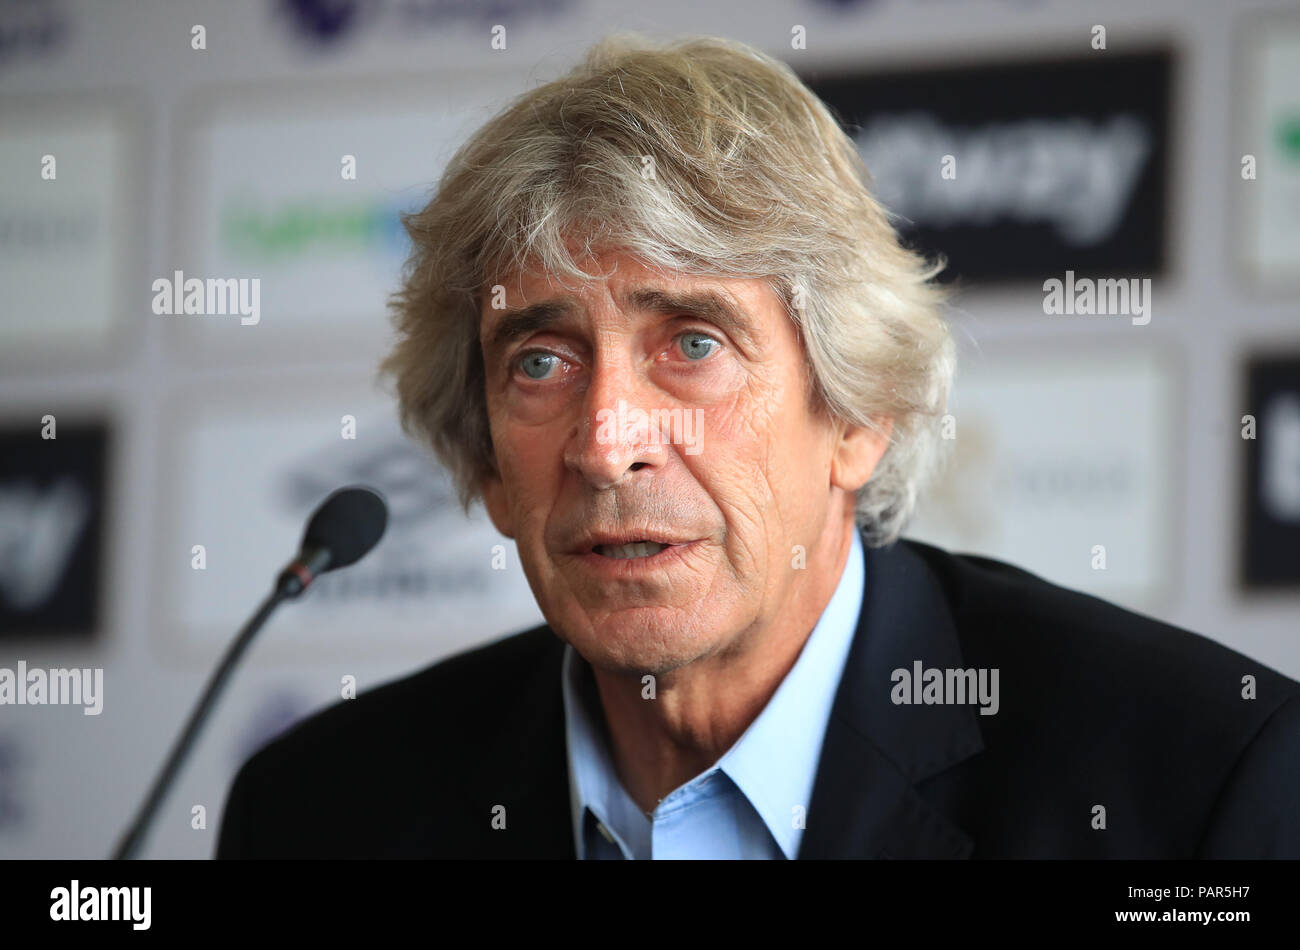 West Ham manager Manuel Pellegrini während einer Pressekonferenz in der Londoner Stadion, London. Stockfoto